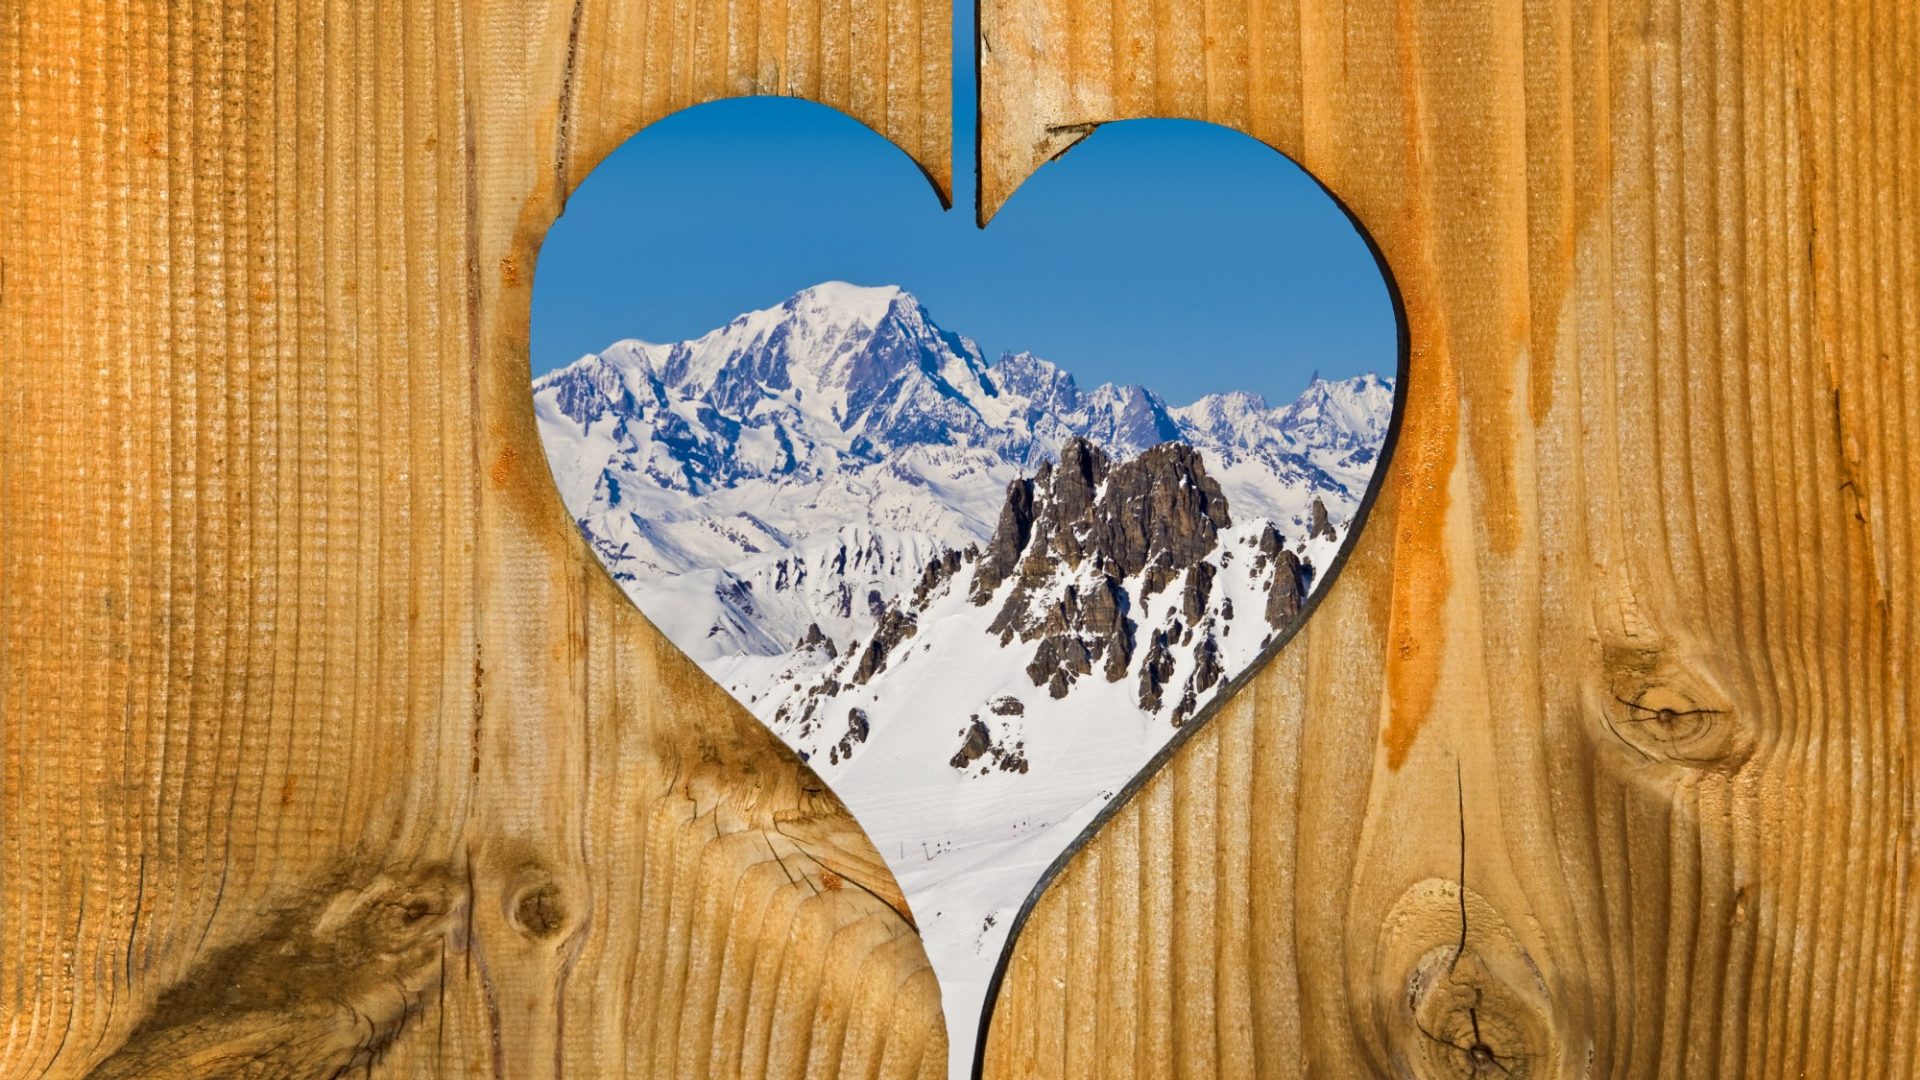 Mont-Blanc, coeur en bois